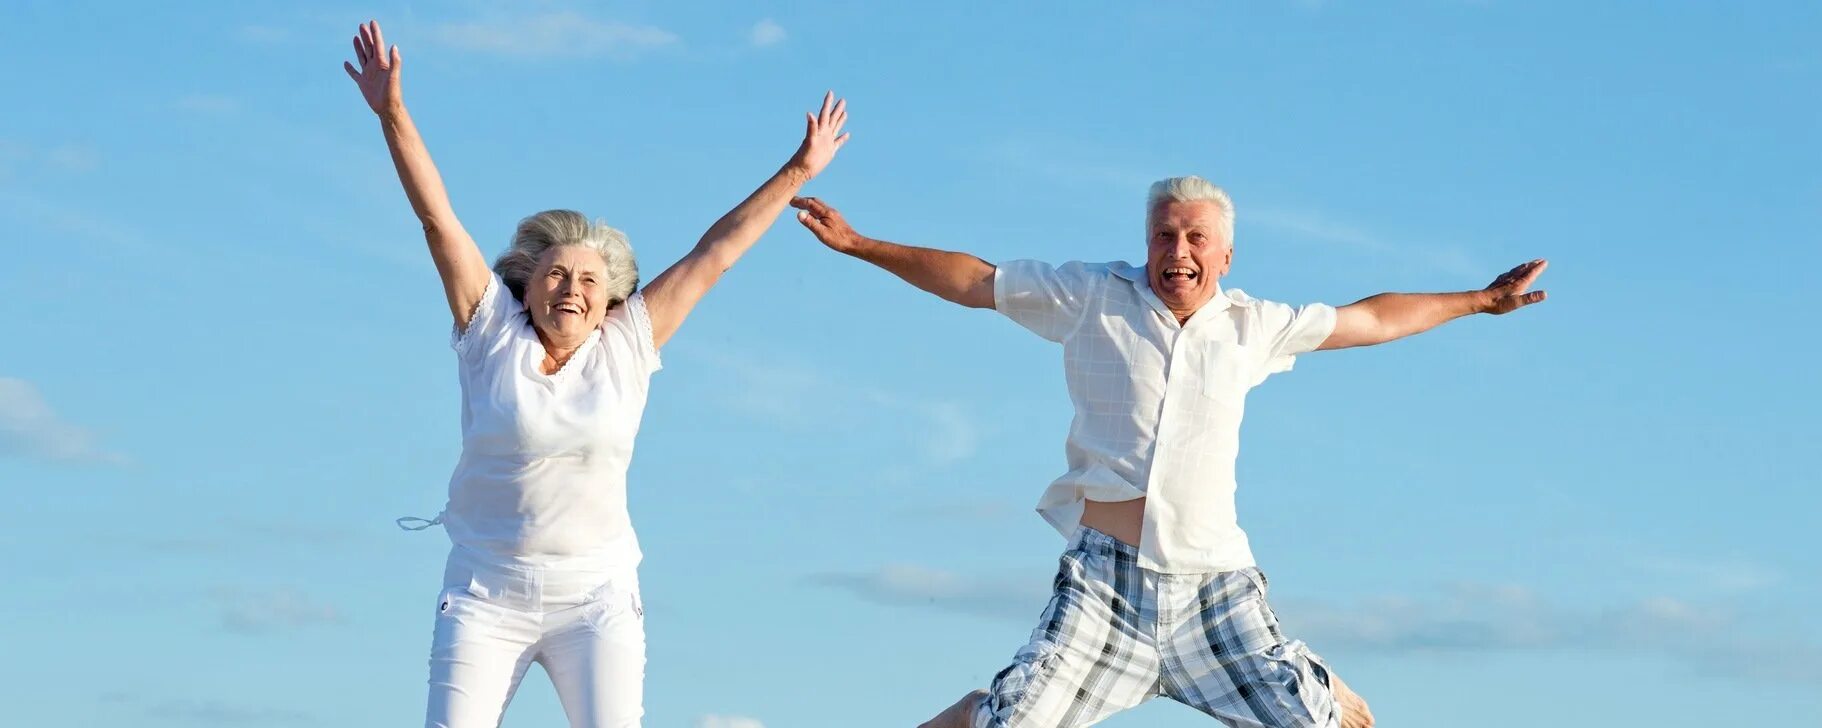 Активное долголетие это. Активный и здоровый образ жизни. Образ жизни и долголетие. Активное долголетие. Красивая старость здоровая.